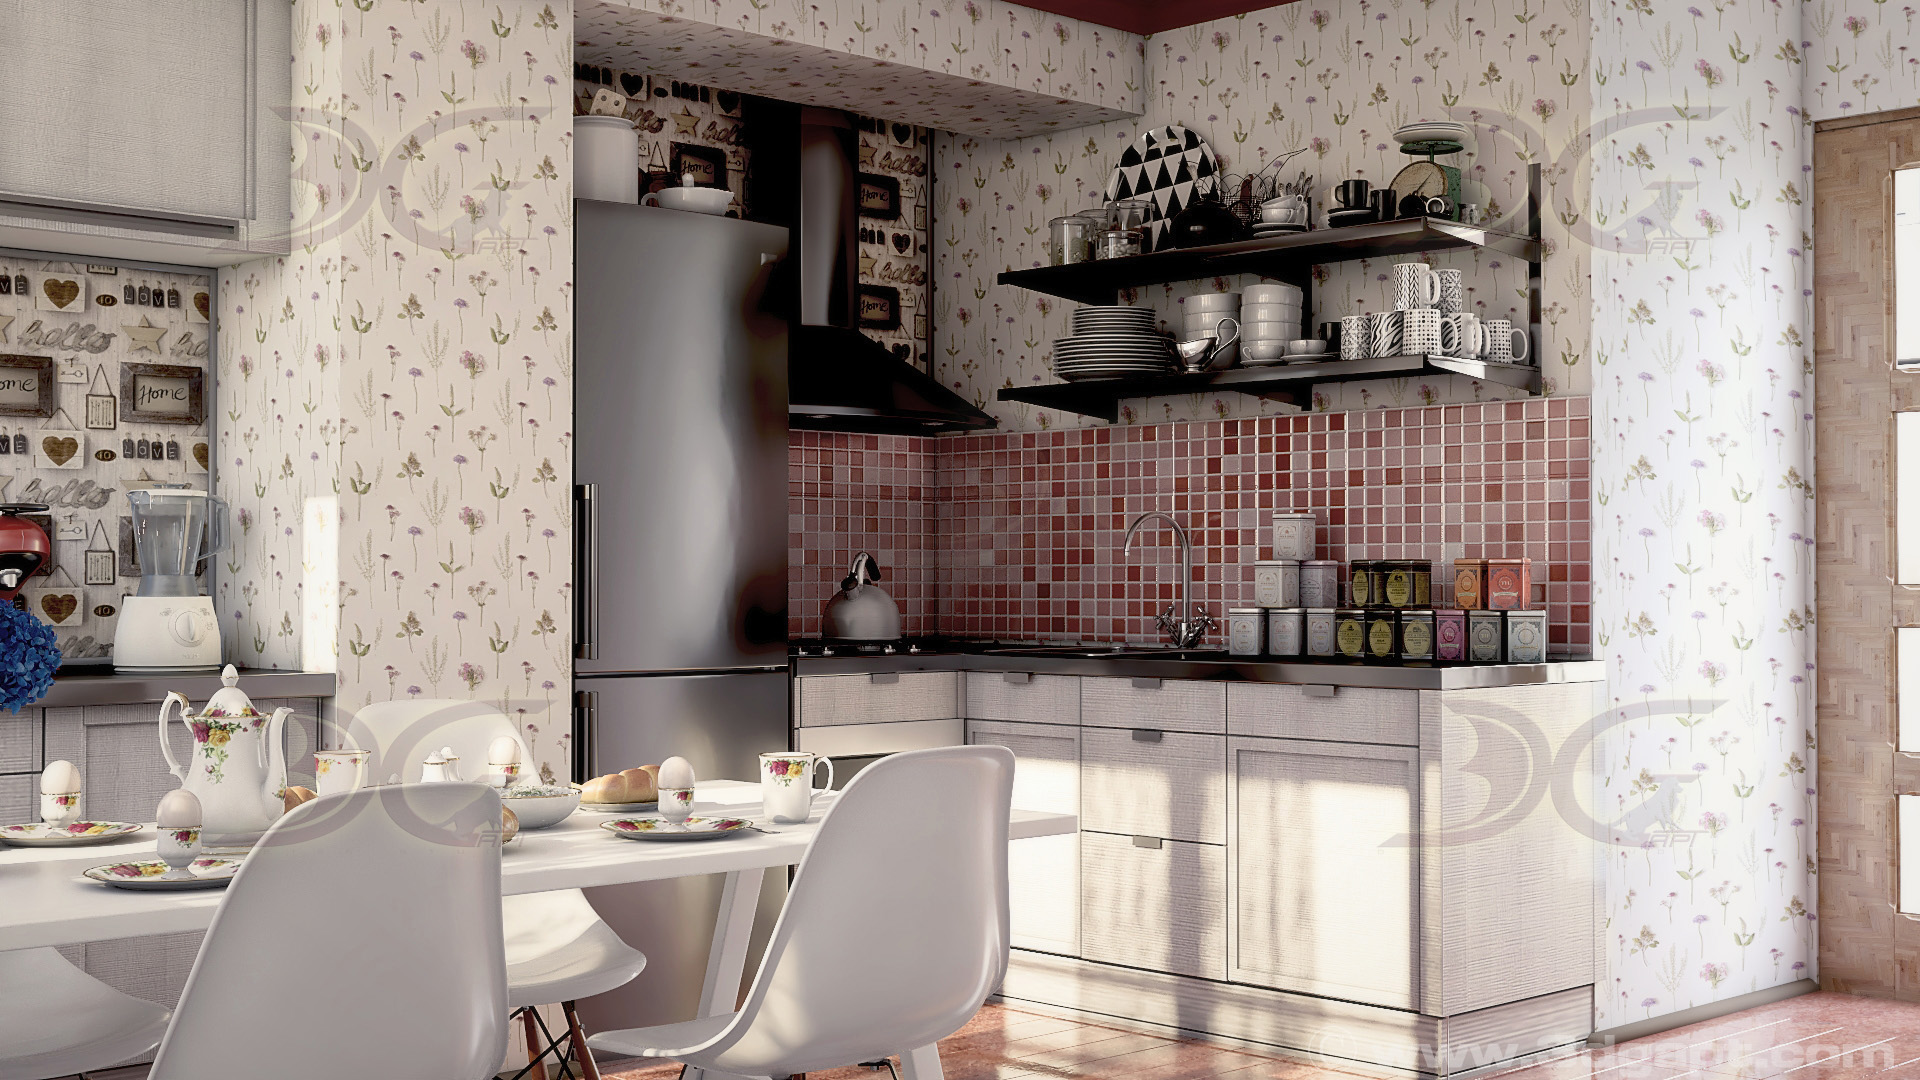 architecture interior kitchen-2versions 005